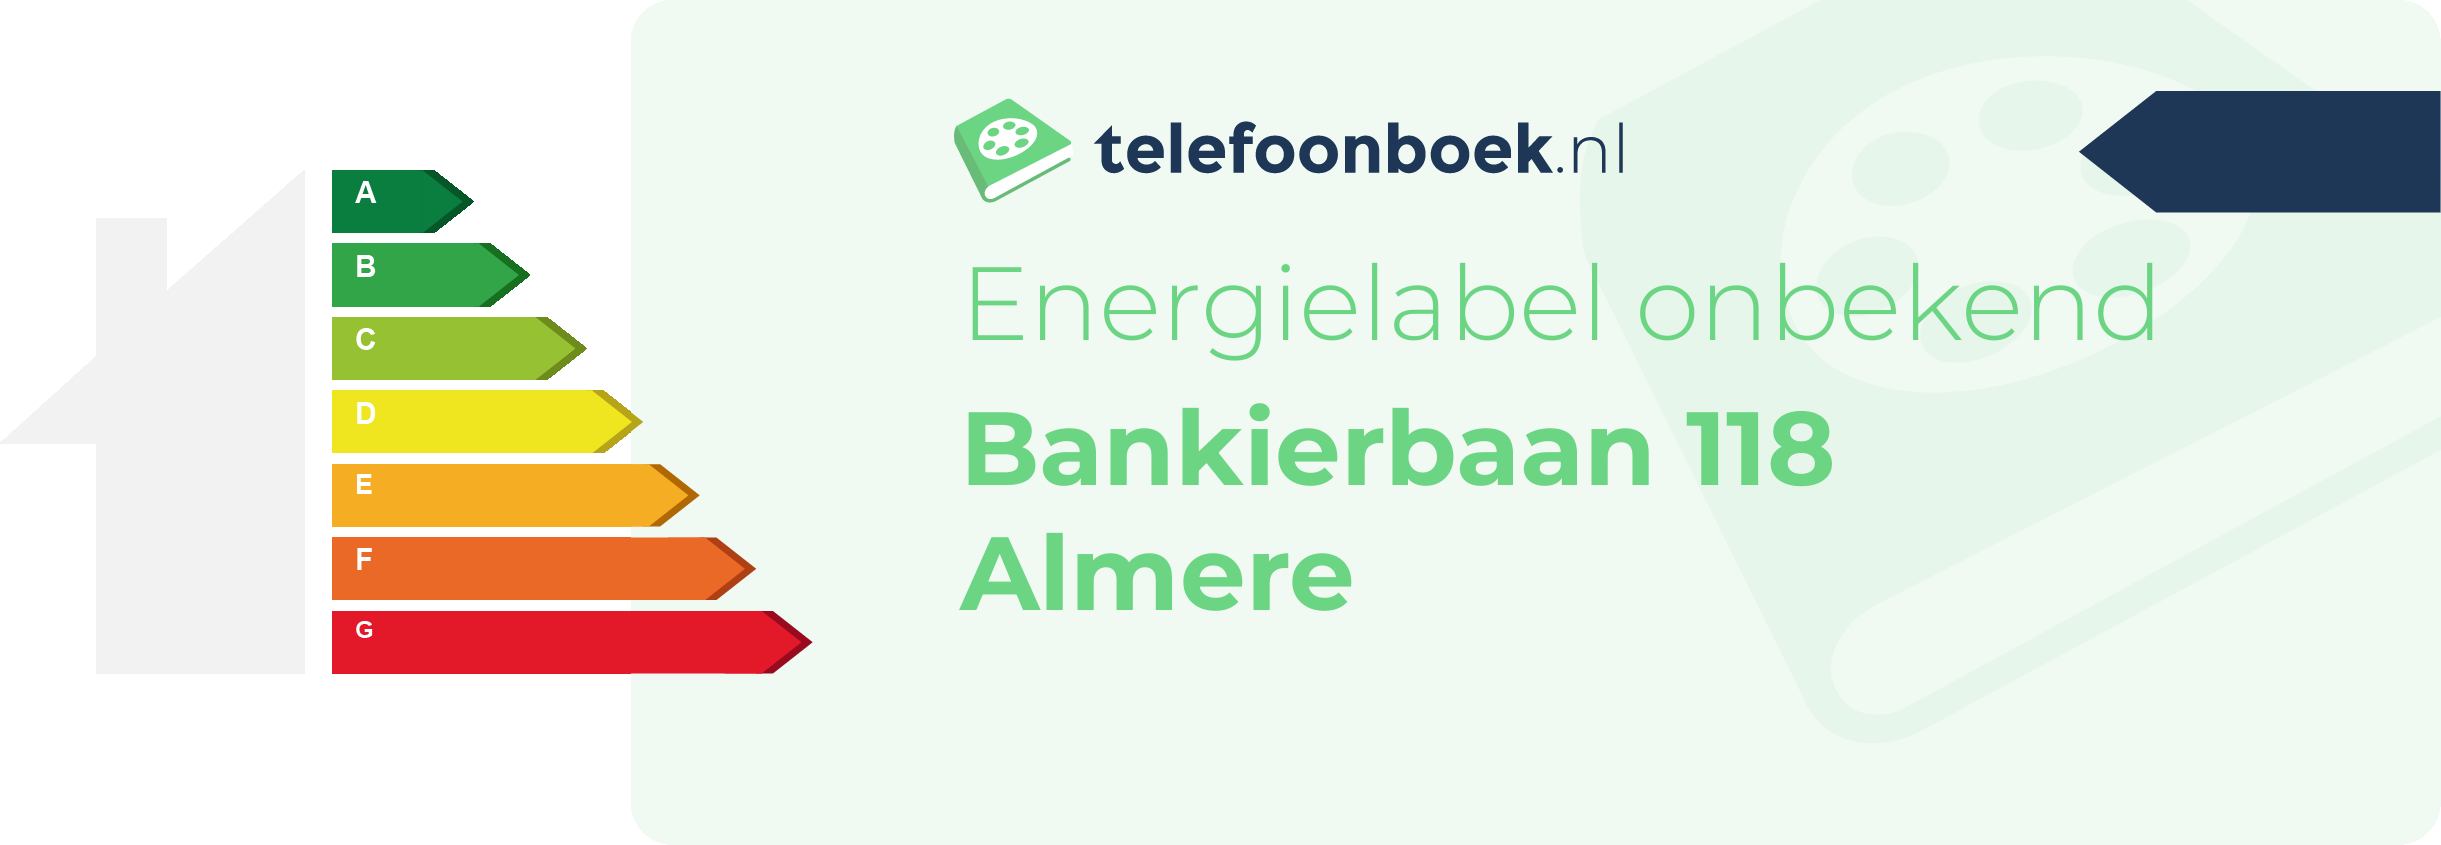 Energielabel Bankierbaan 118 Almere